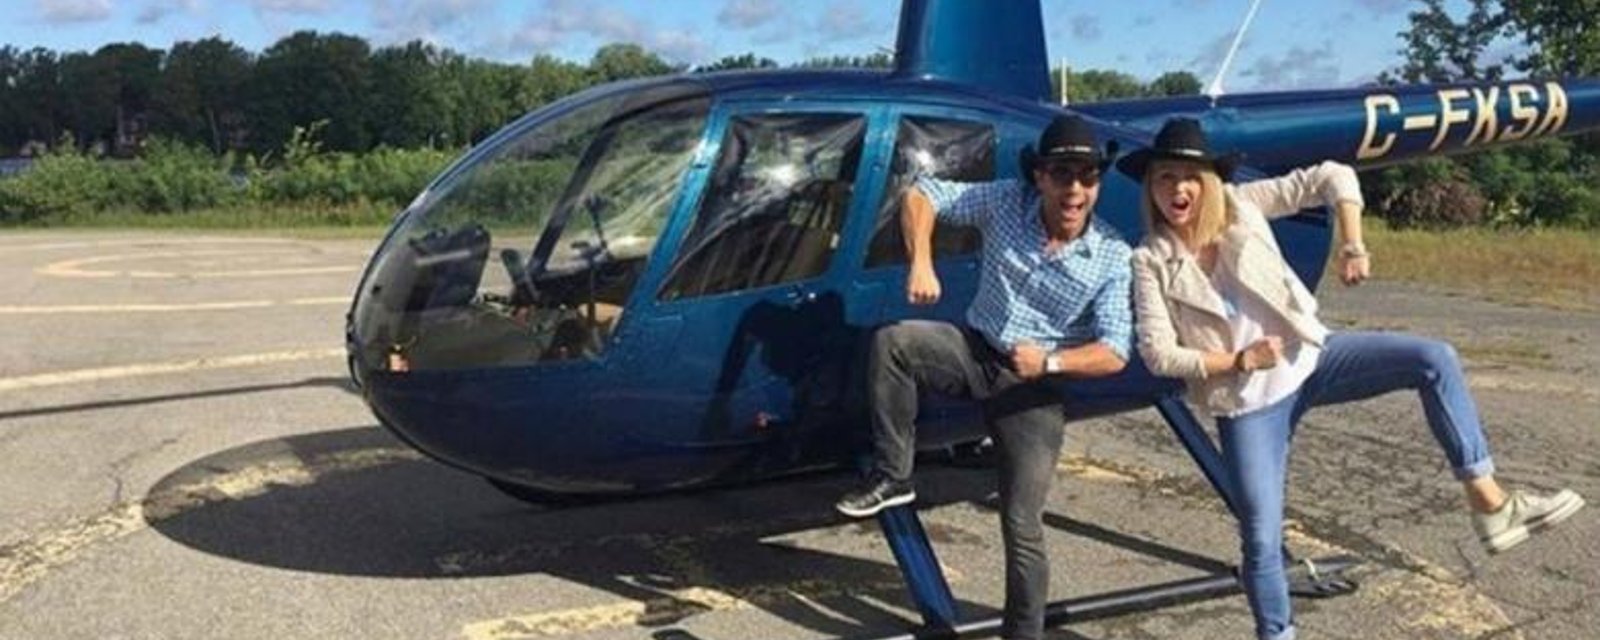 Après le terrible événement, Mitsou monte en hélicoptère pour se rendre à St-Tite